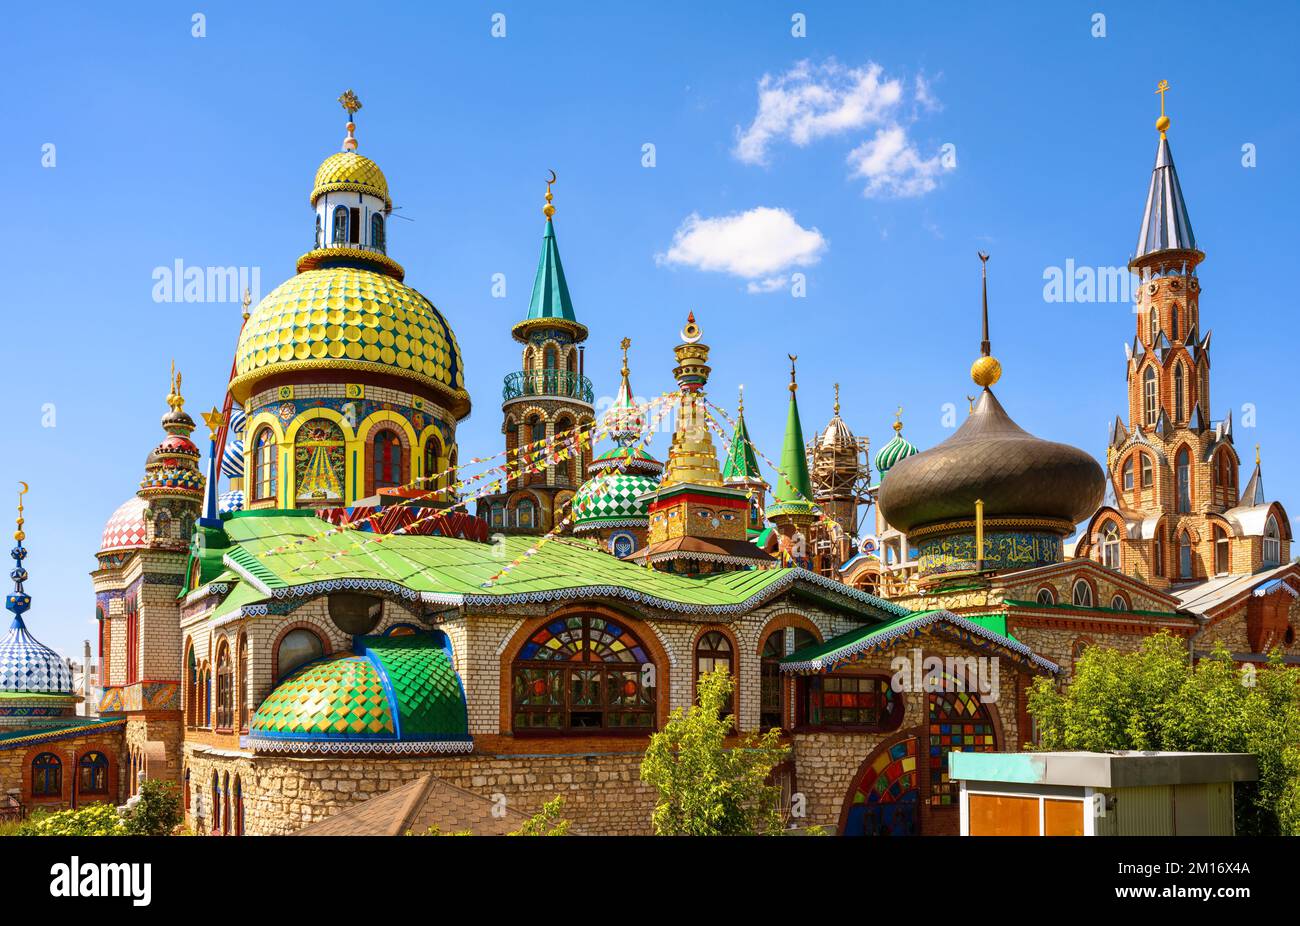 Temple de toutes les religions à Kazan, Tatarstan, Russie. C'est un monument historique de Kazan. Panorama de beau complexe coloré d'églises, de mosquées et d'autres lieux Banque D'Images